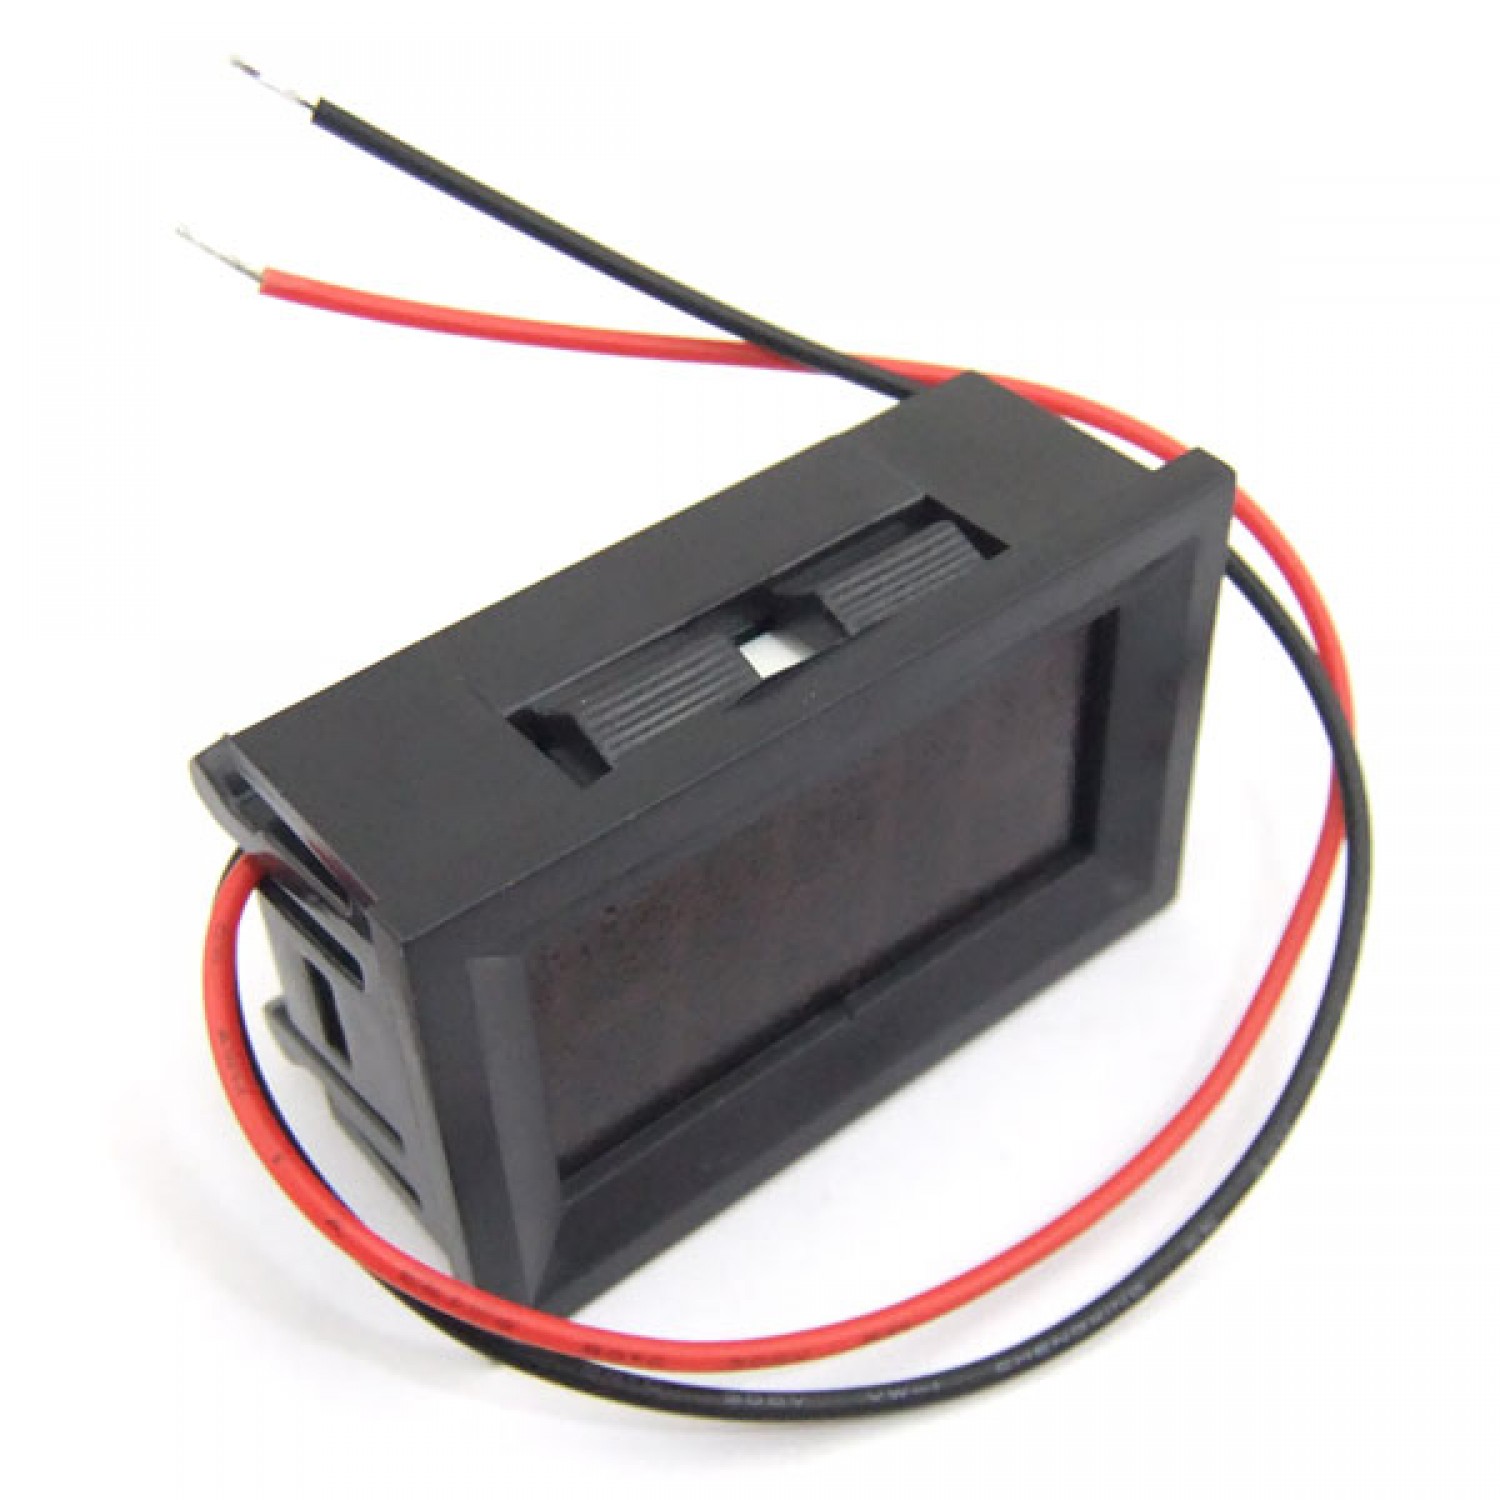 Details about   2 Wire Digital LED Red Car Voltmeter Voltage Volt Panel Meter Gauge DC 4.5-30V 